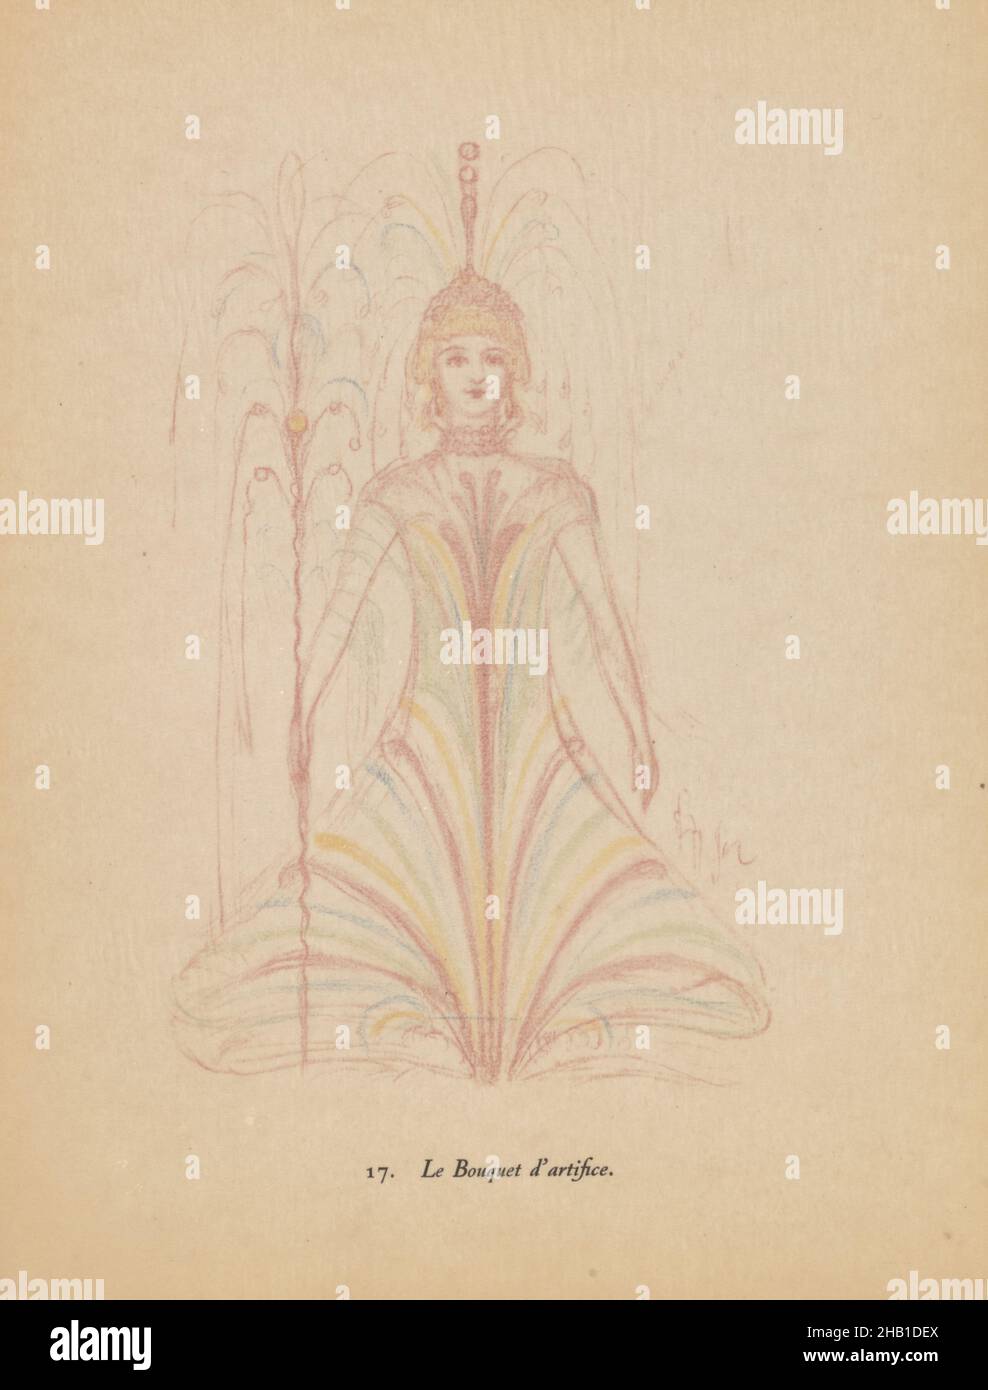 La gamme d'amour, James Ensor, 1929, oeuvre littéraire, 1929,Art belge Banque D'Images